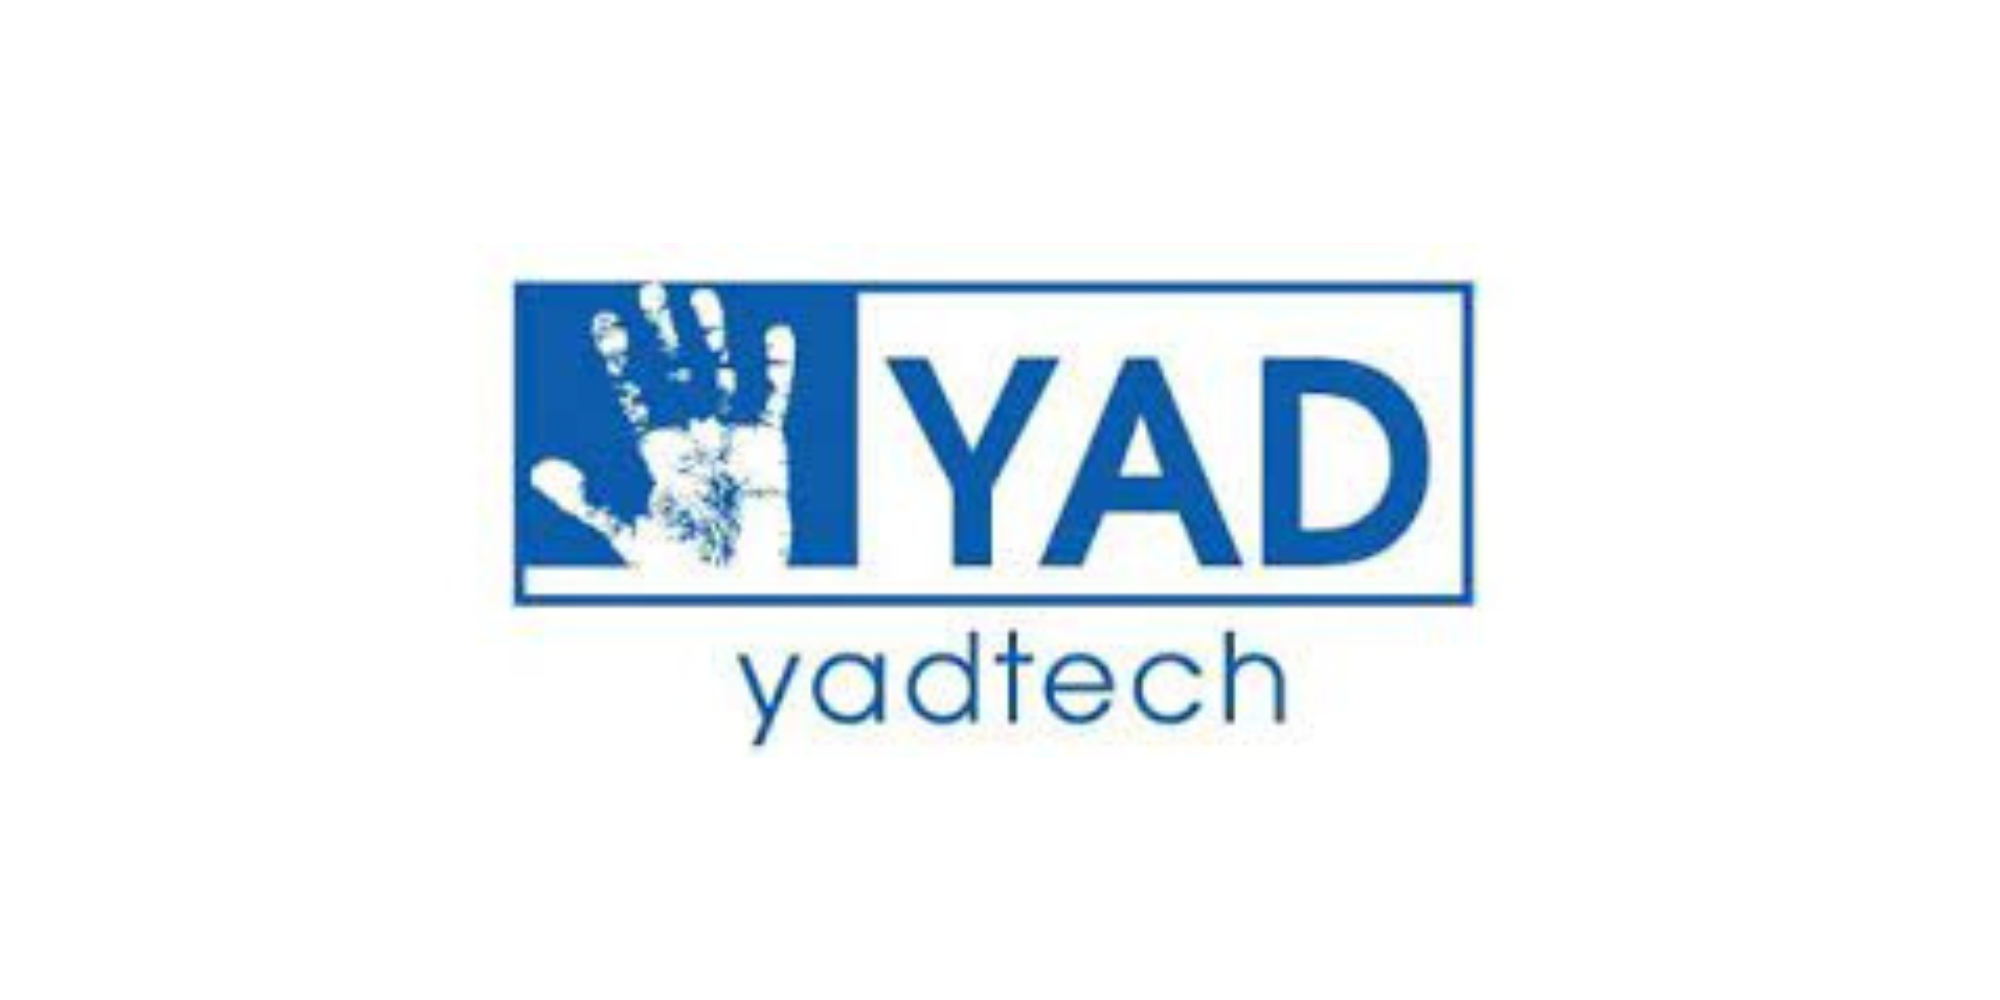 Yadtech